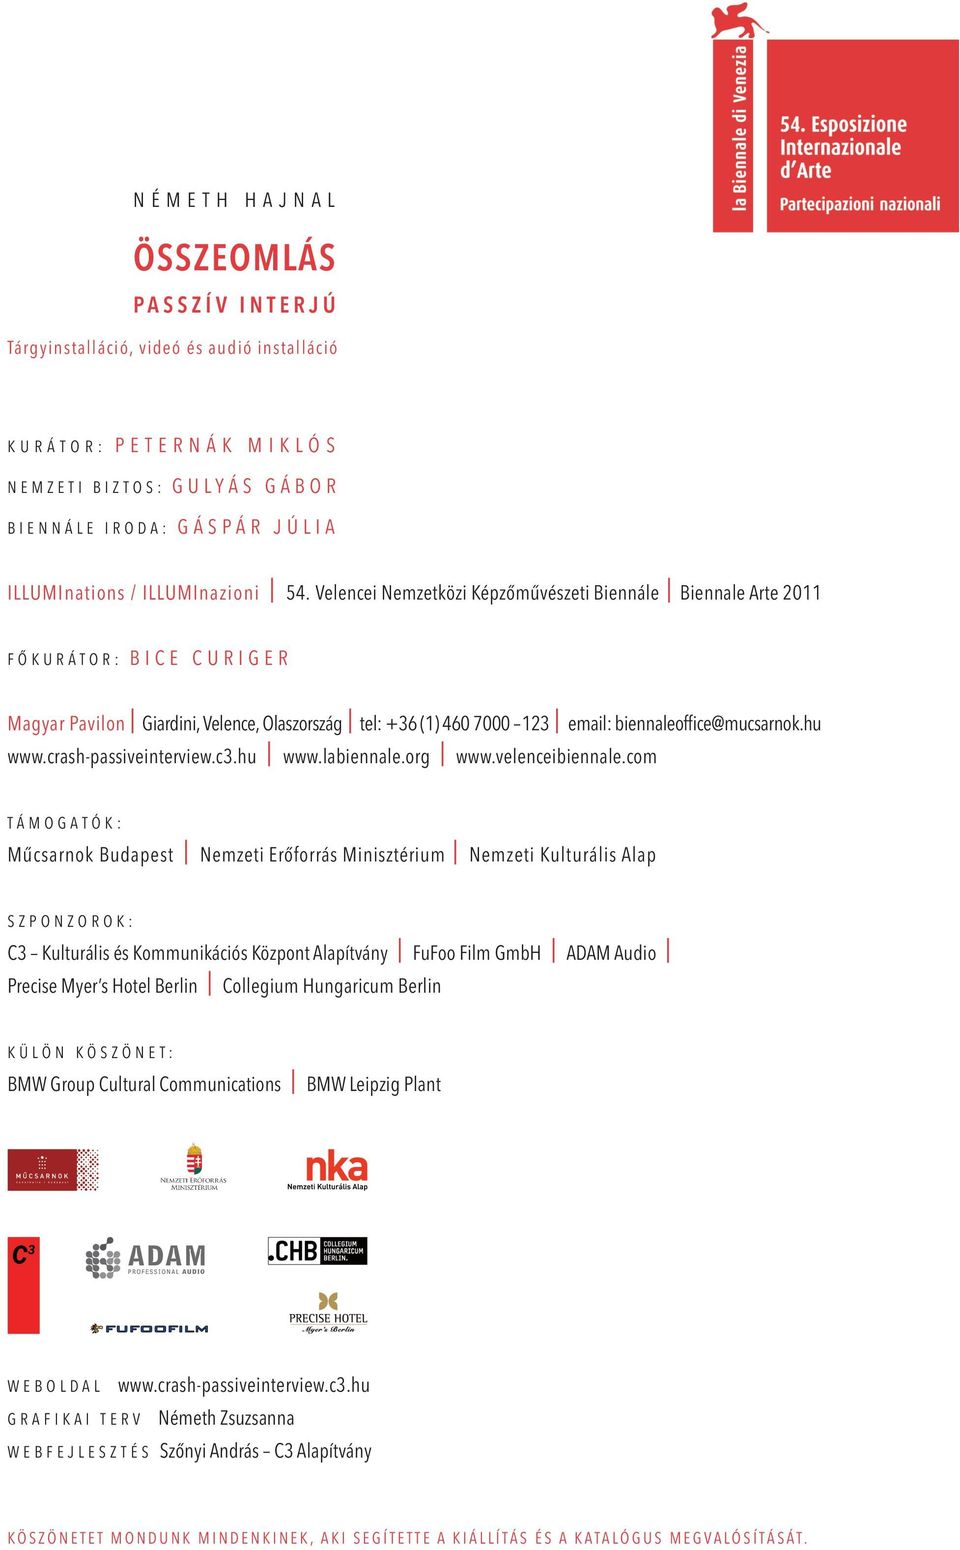 Velencei Nemzetközi képzőművészeti biennále i biennale arte 2011 f ő k u r á t o r : b i c e c u r i g e r magyar pavilon i giardini, Velence, olaszország i tel: +36 (1) 460 7000 123 i email: